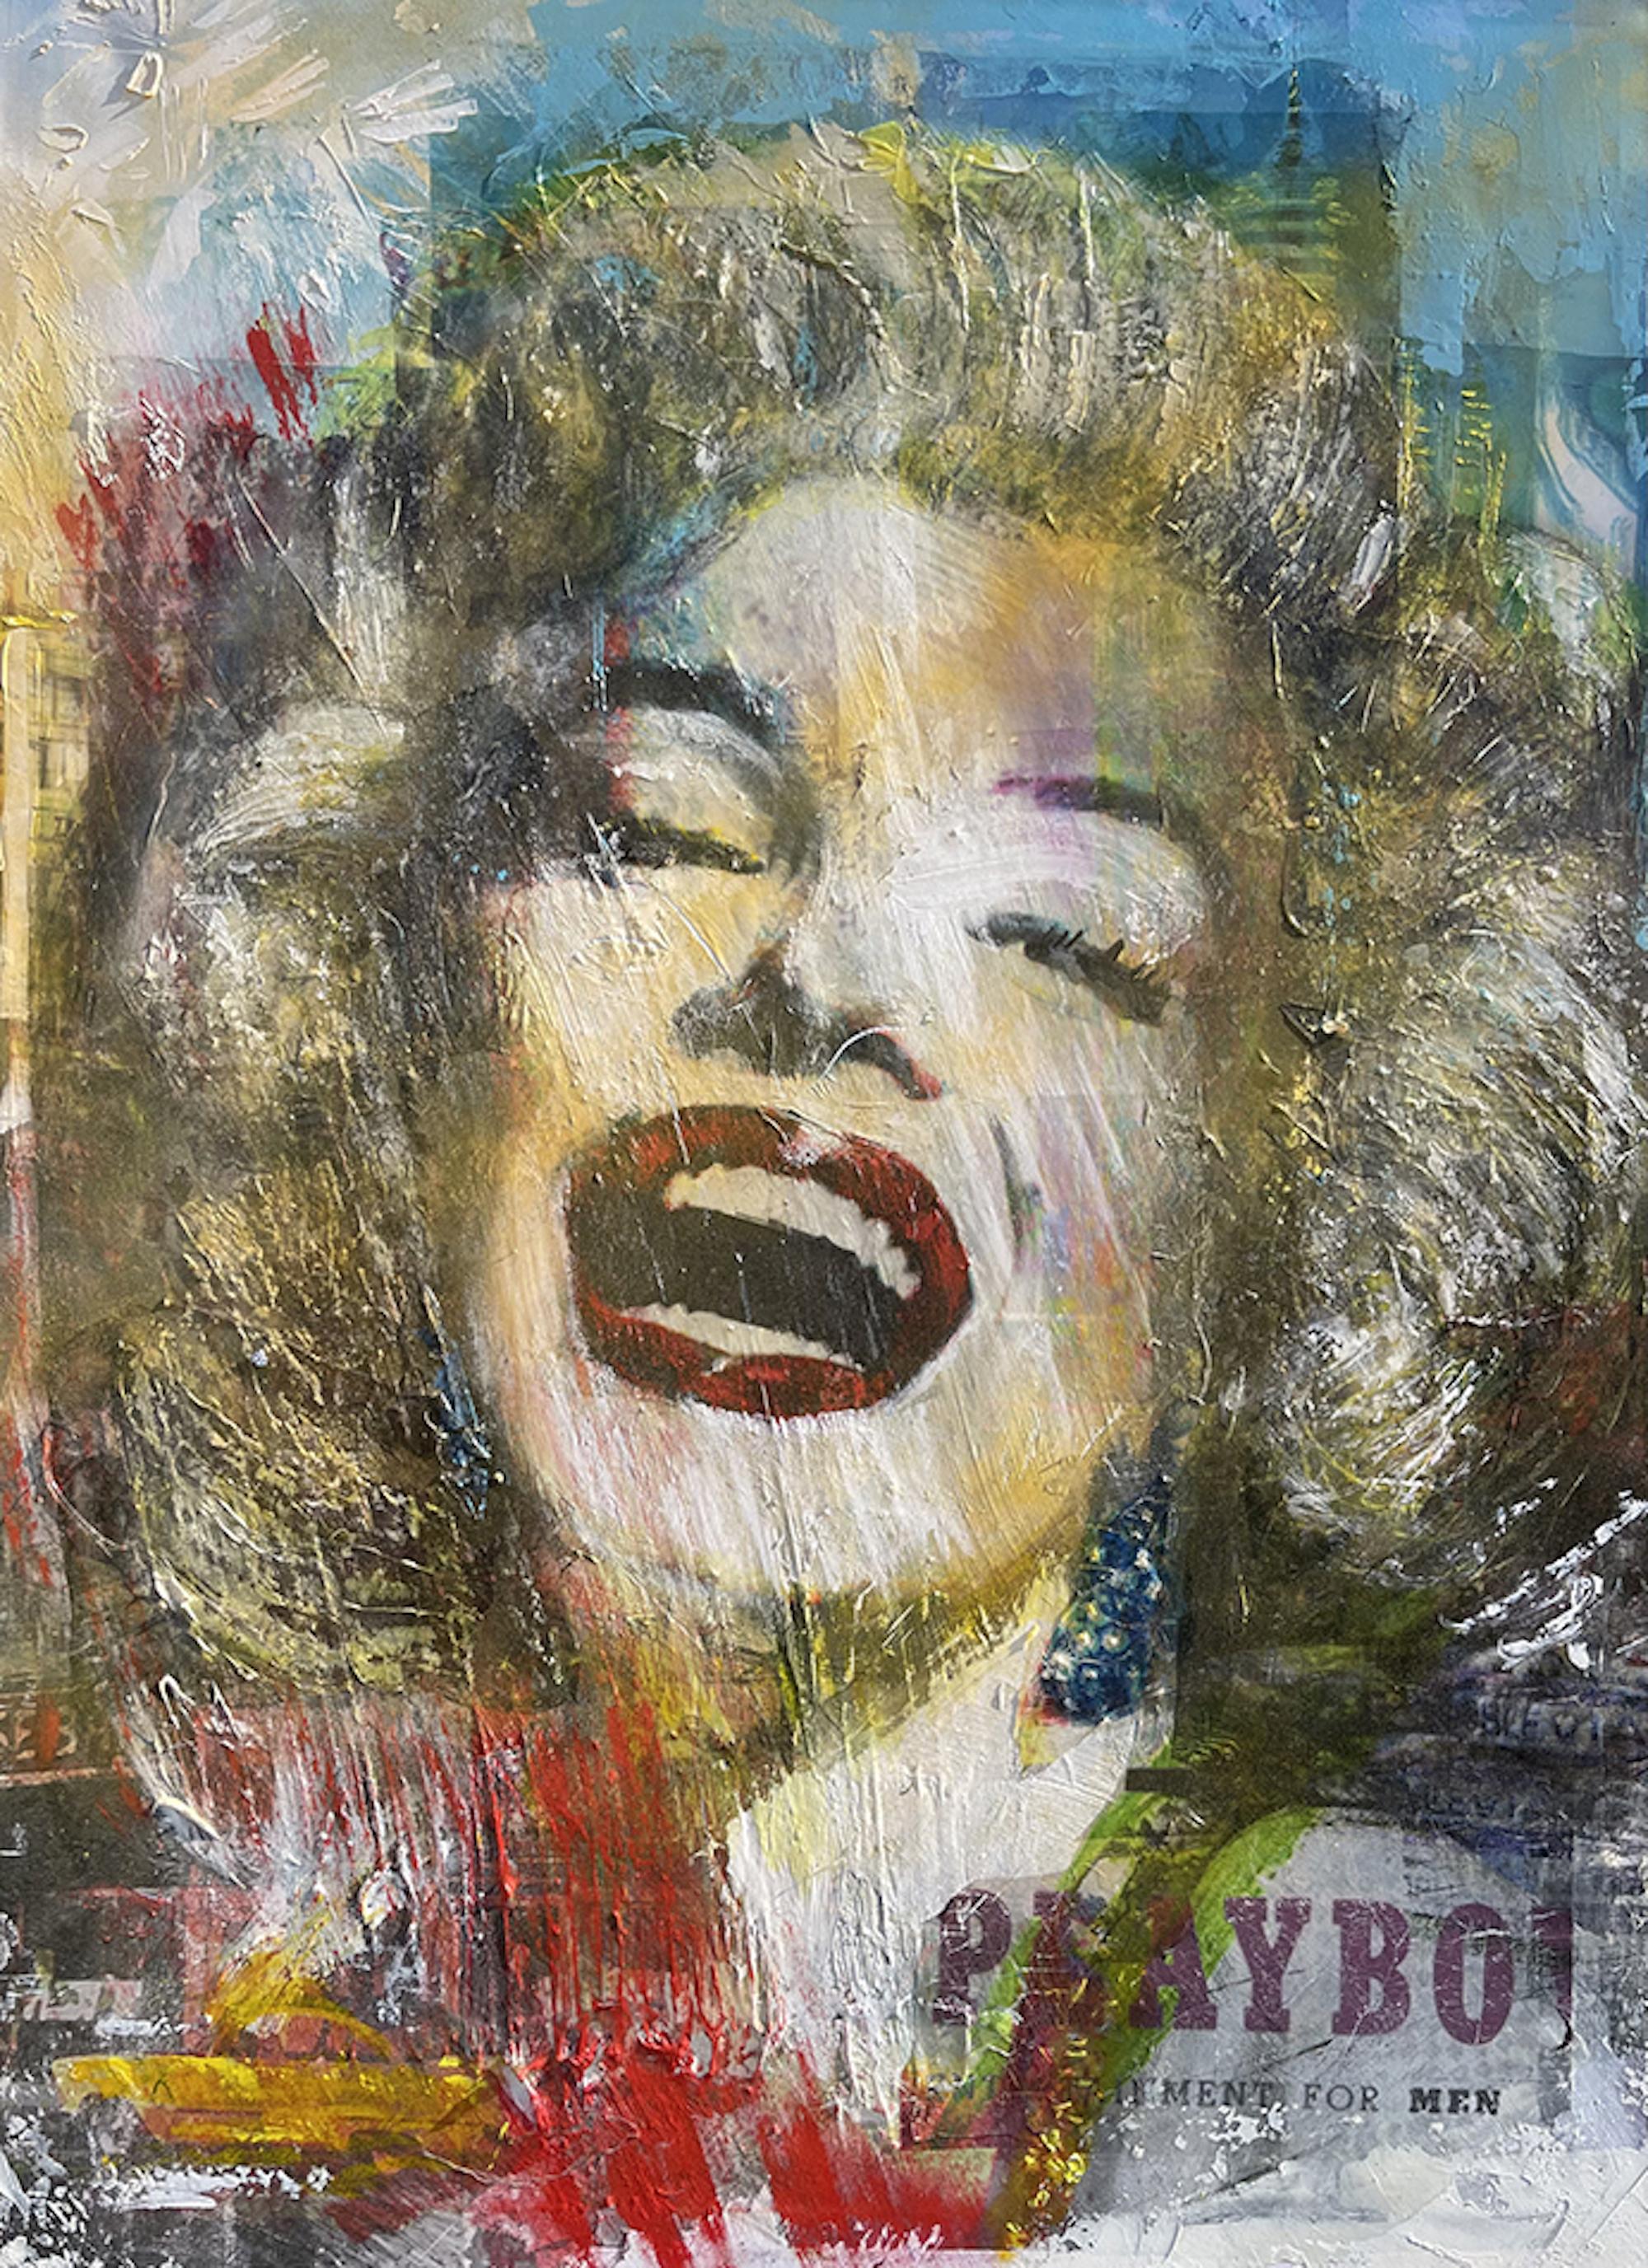 Gill Storr Portrait Painting - Marilyn, Marilyn Monroe art, film star art, Hollywood art, celebrity art